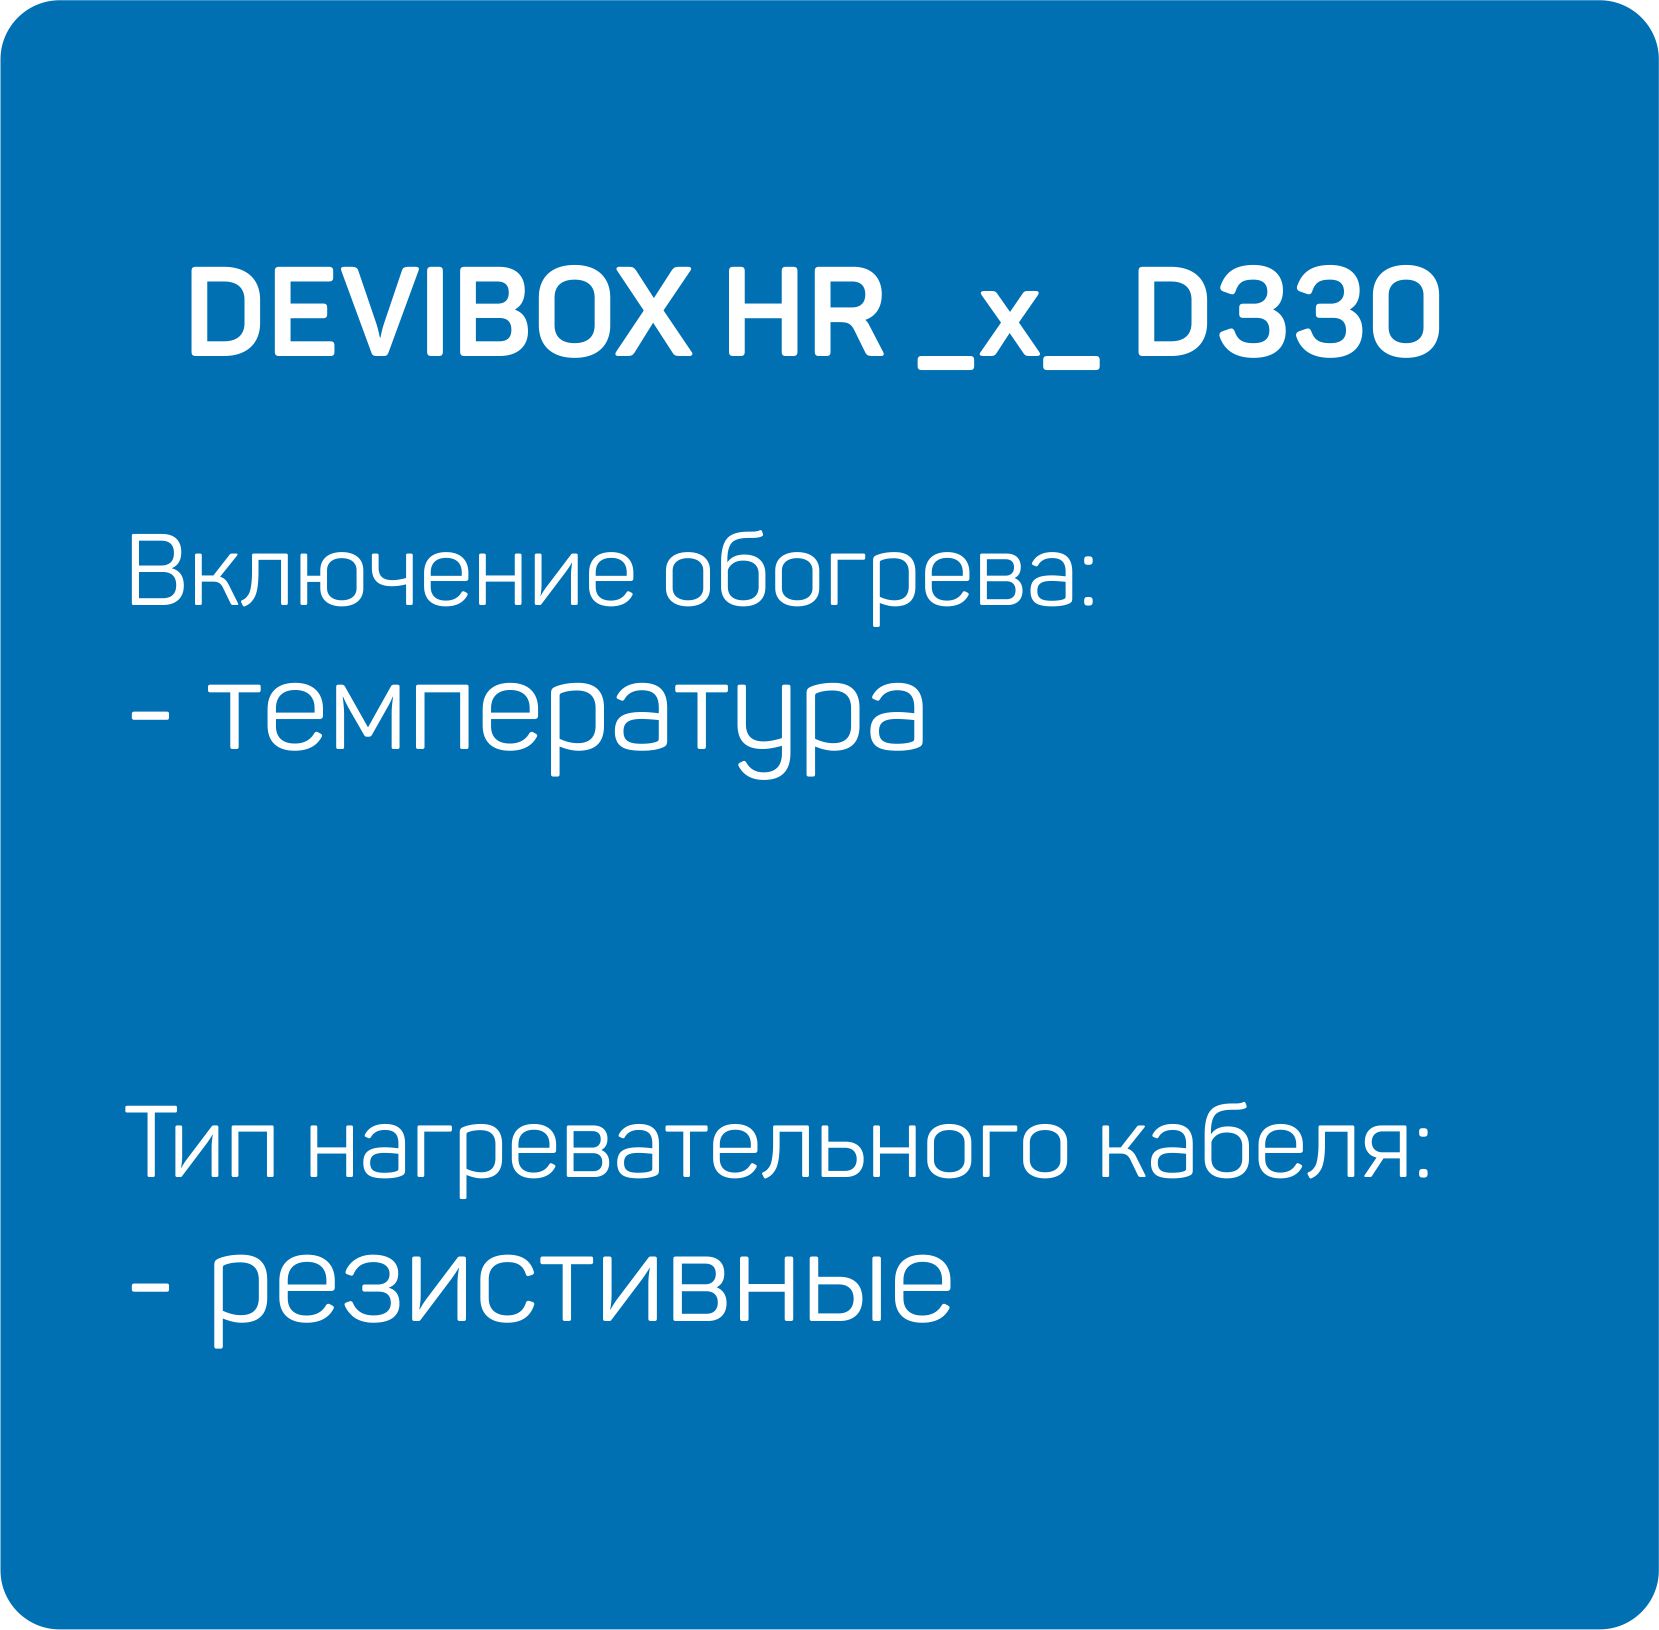 HR _x_ D330